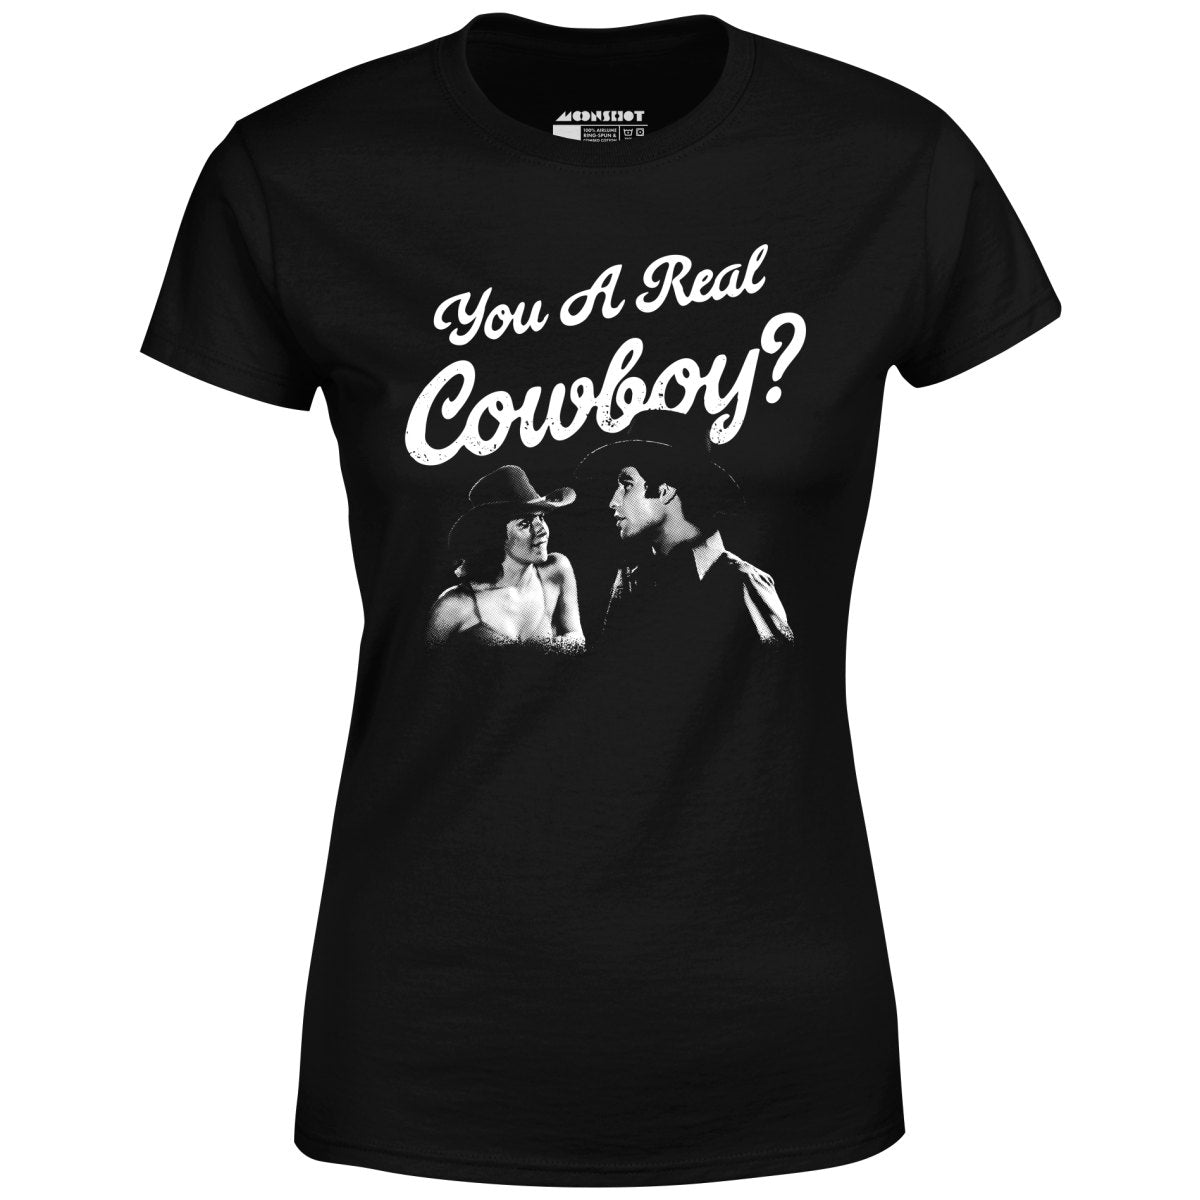 You a Real Cowboy? - Women's T-Shirt